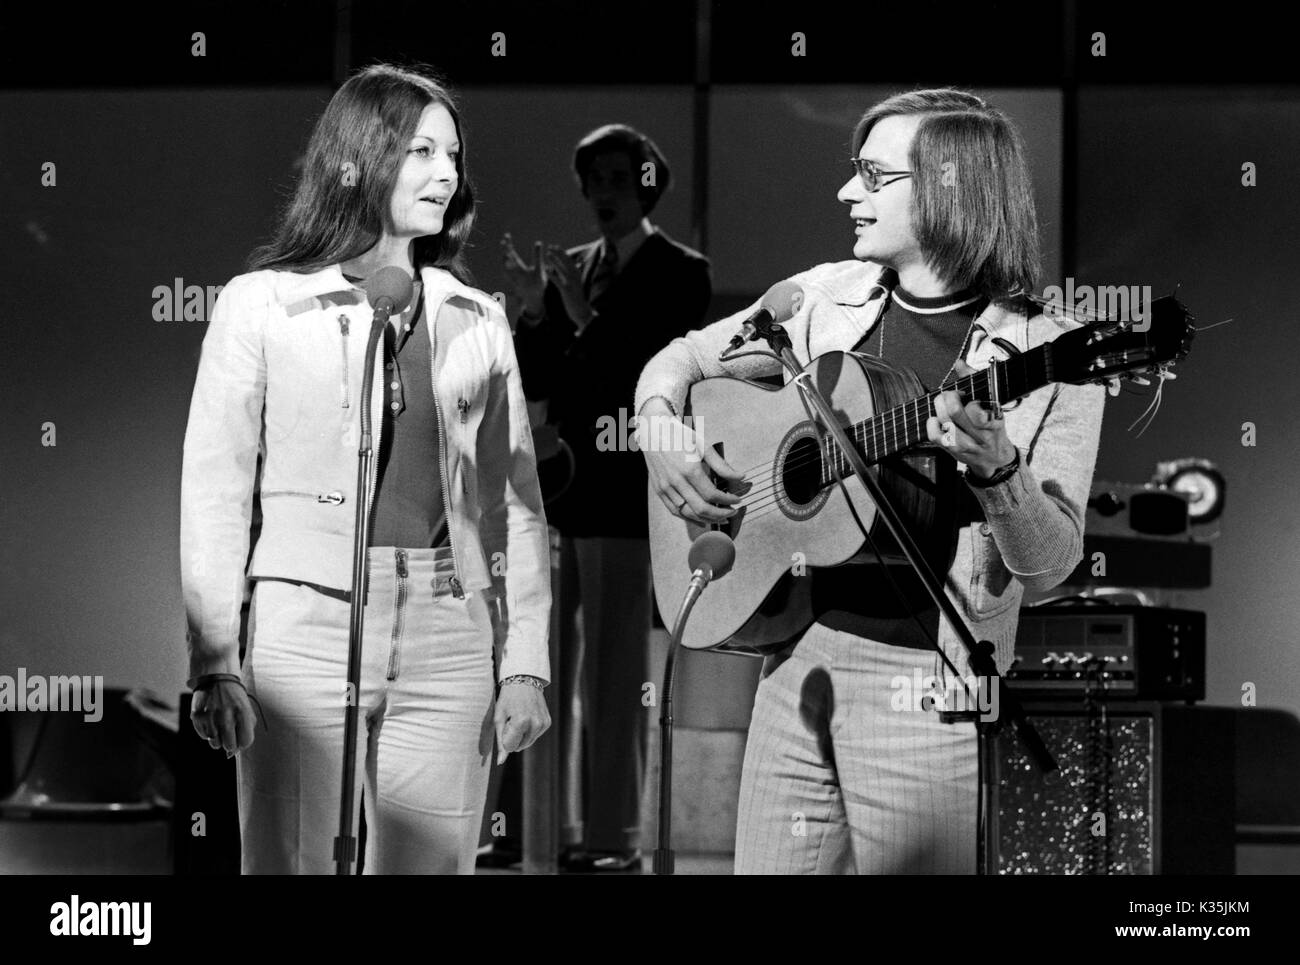 Das deutsche Gesangsduo Inga und Wolf bei einem Fernsehauftritt, Deutschland 1970er Jahre. German vocal duo Inga and Wolf performing at TV, Germany 1970s. Stock Photo